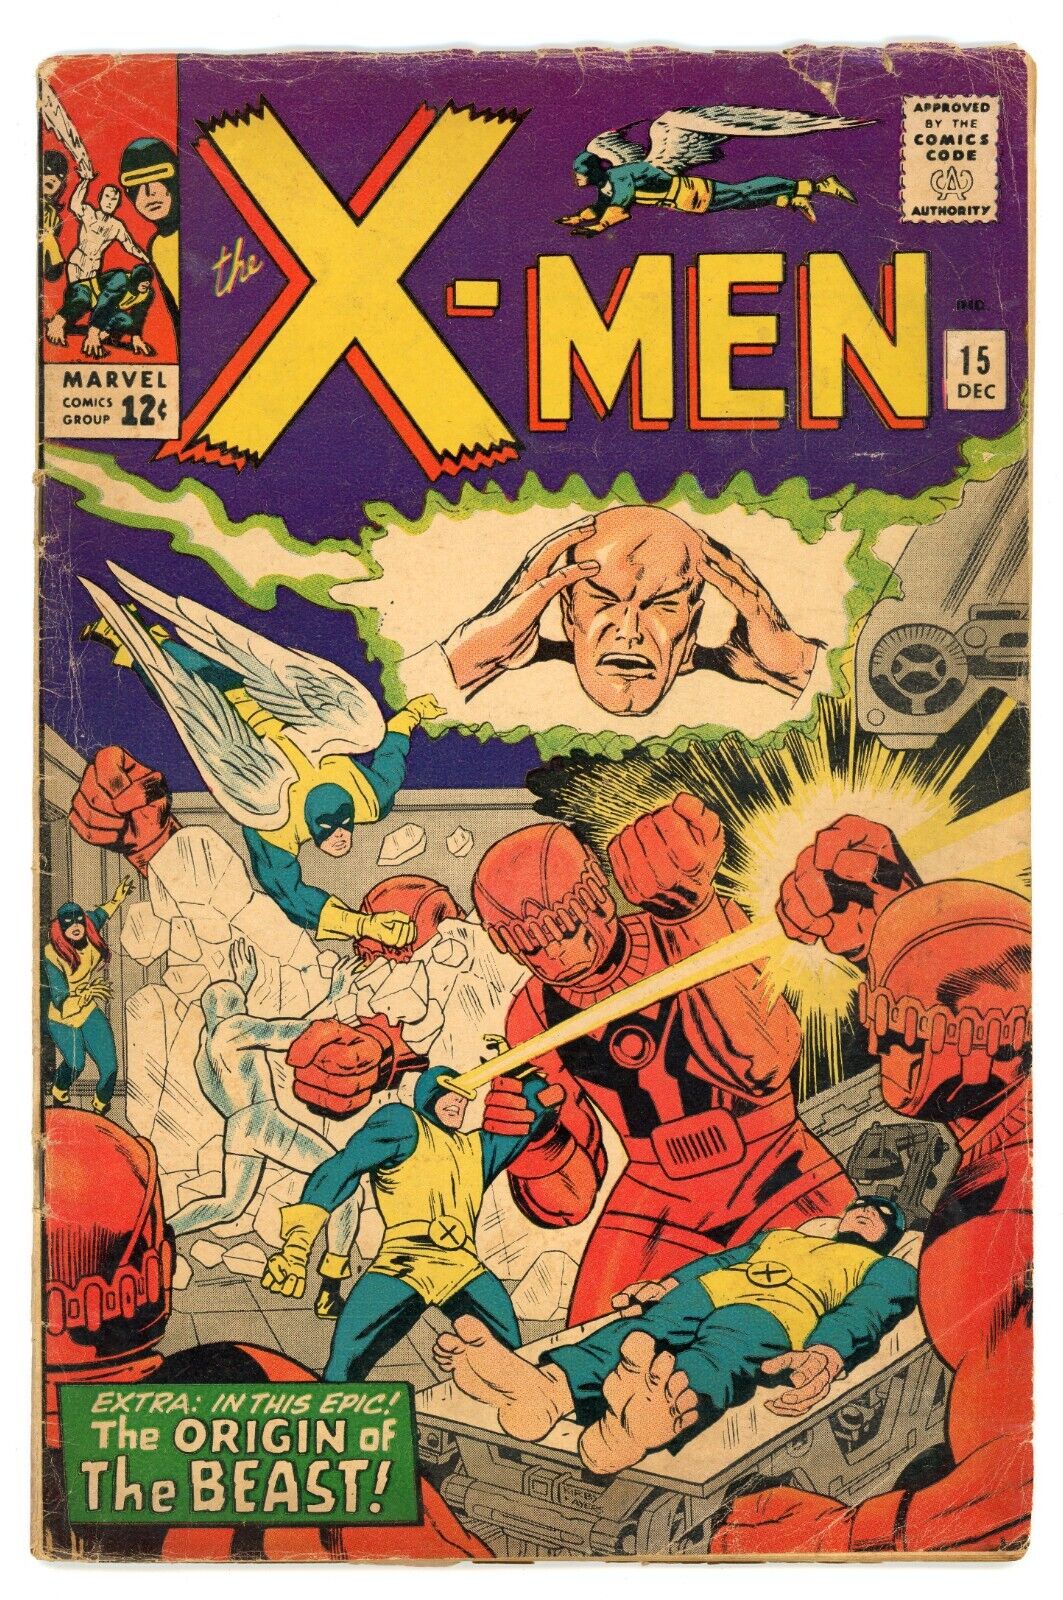 The X-Men #15 Marvel Comics 1965